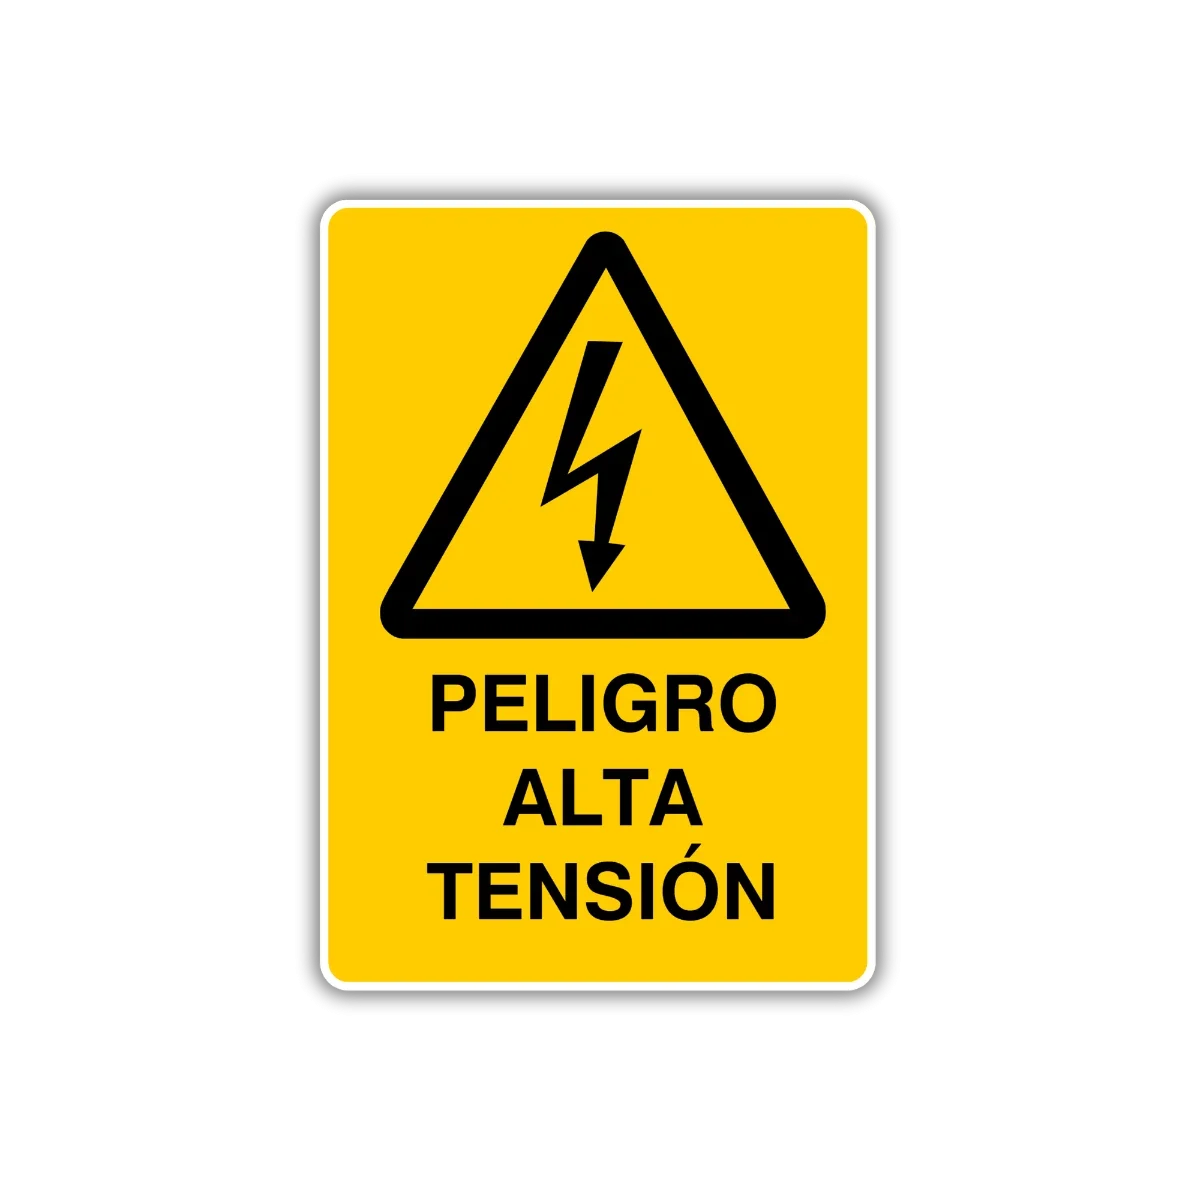 La señal Peligro alta tensión advierte sobre posibles riesgos eléctricos